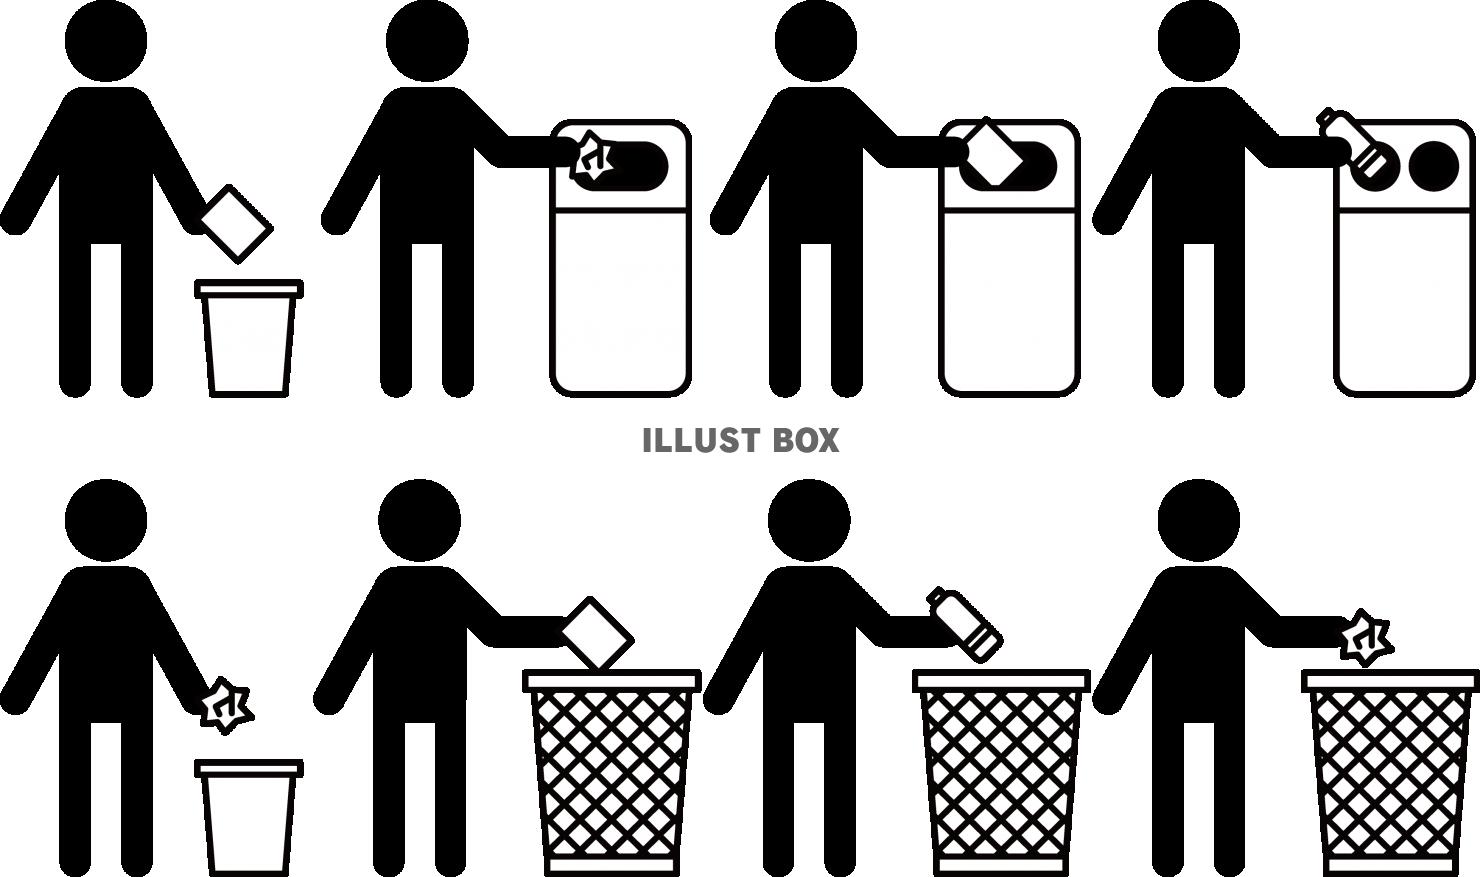 ゴミ捨て・ポイ捨て禁止　ゴミ箱ピクト